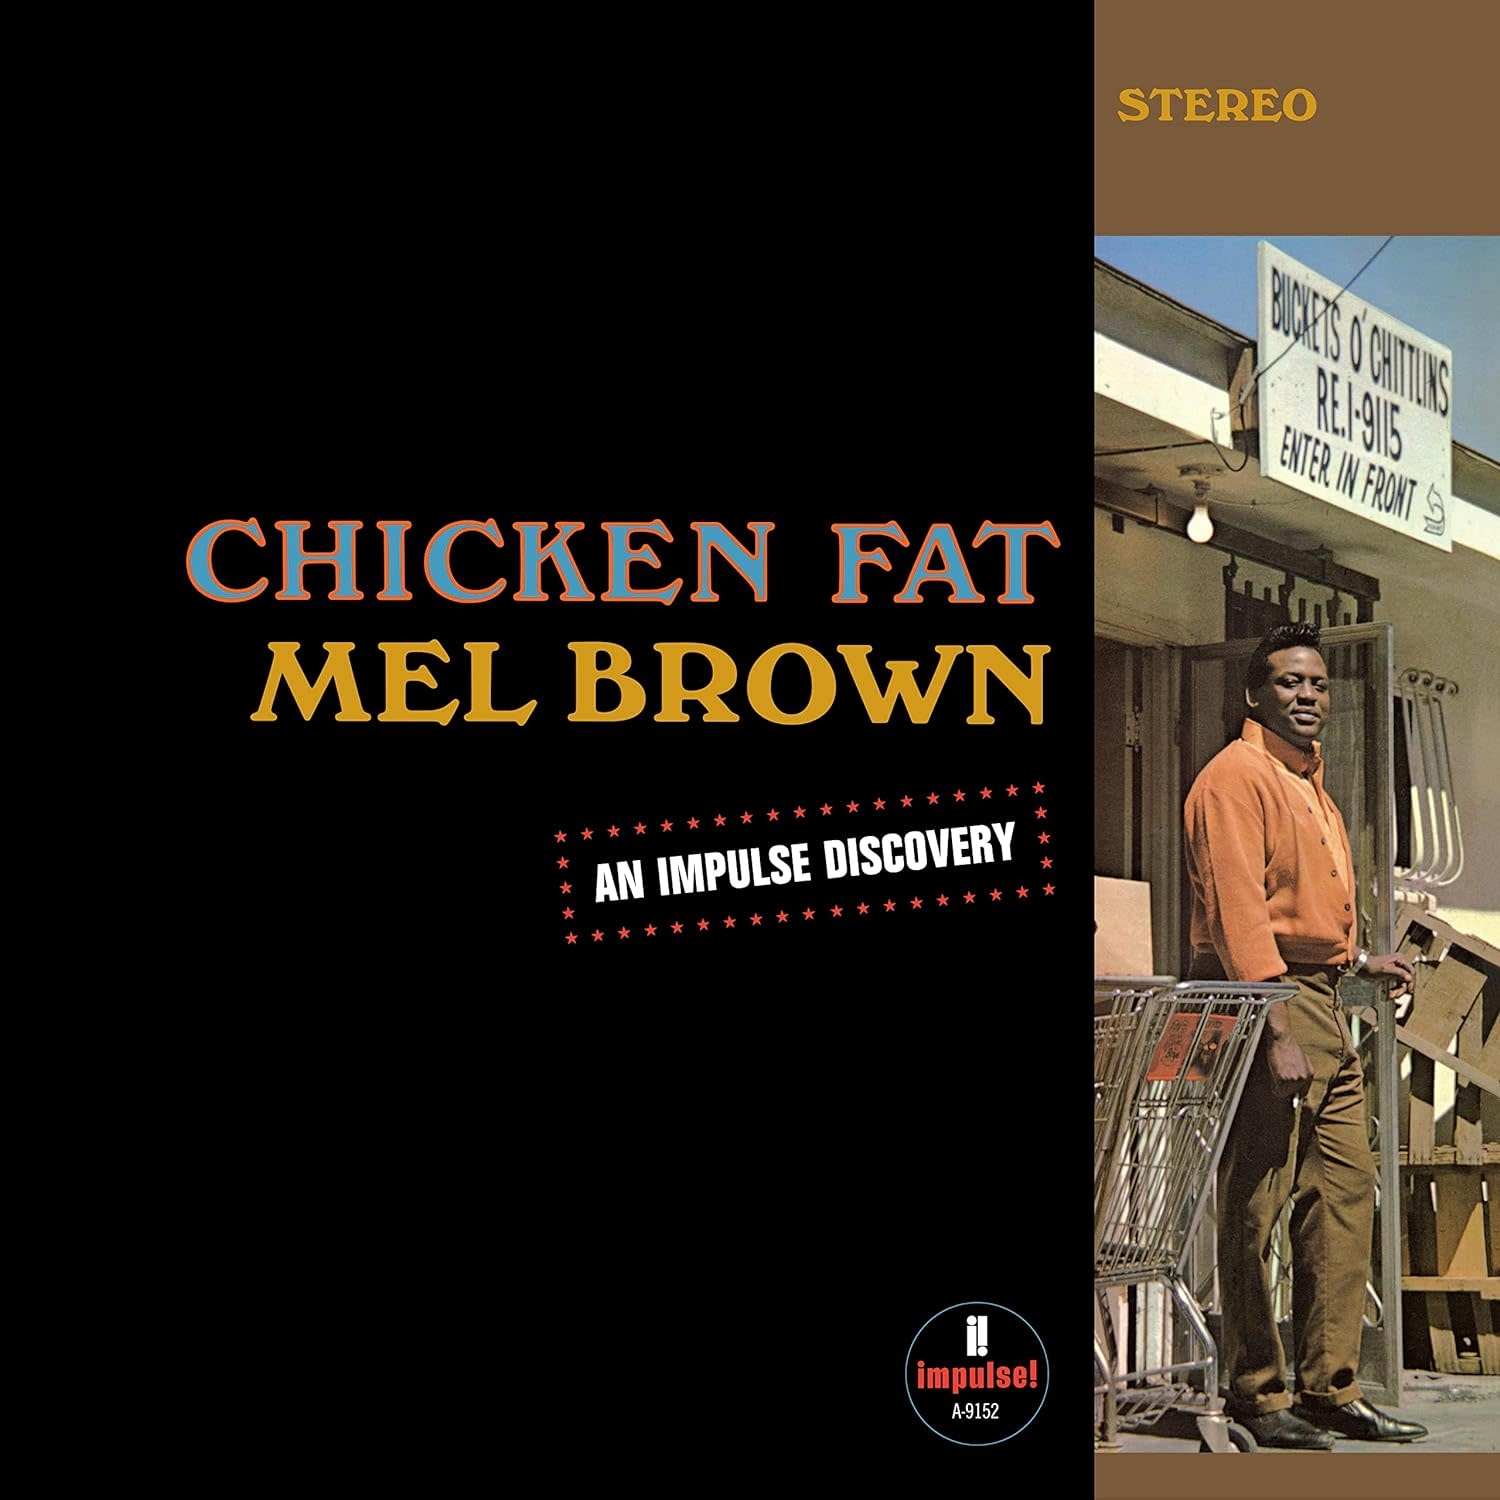 Mel Brown – Chicken Fat